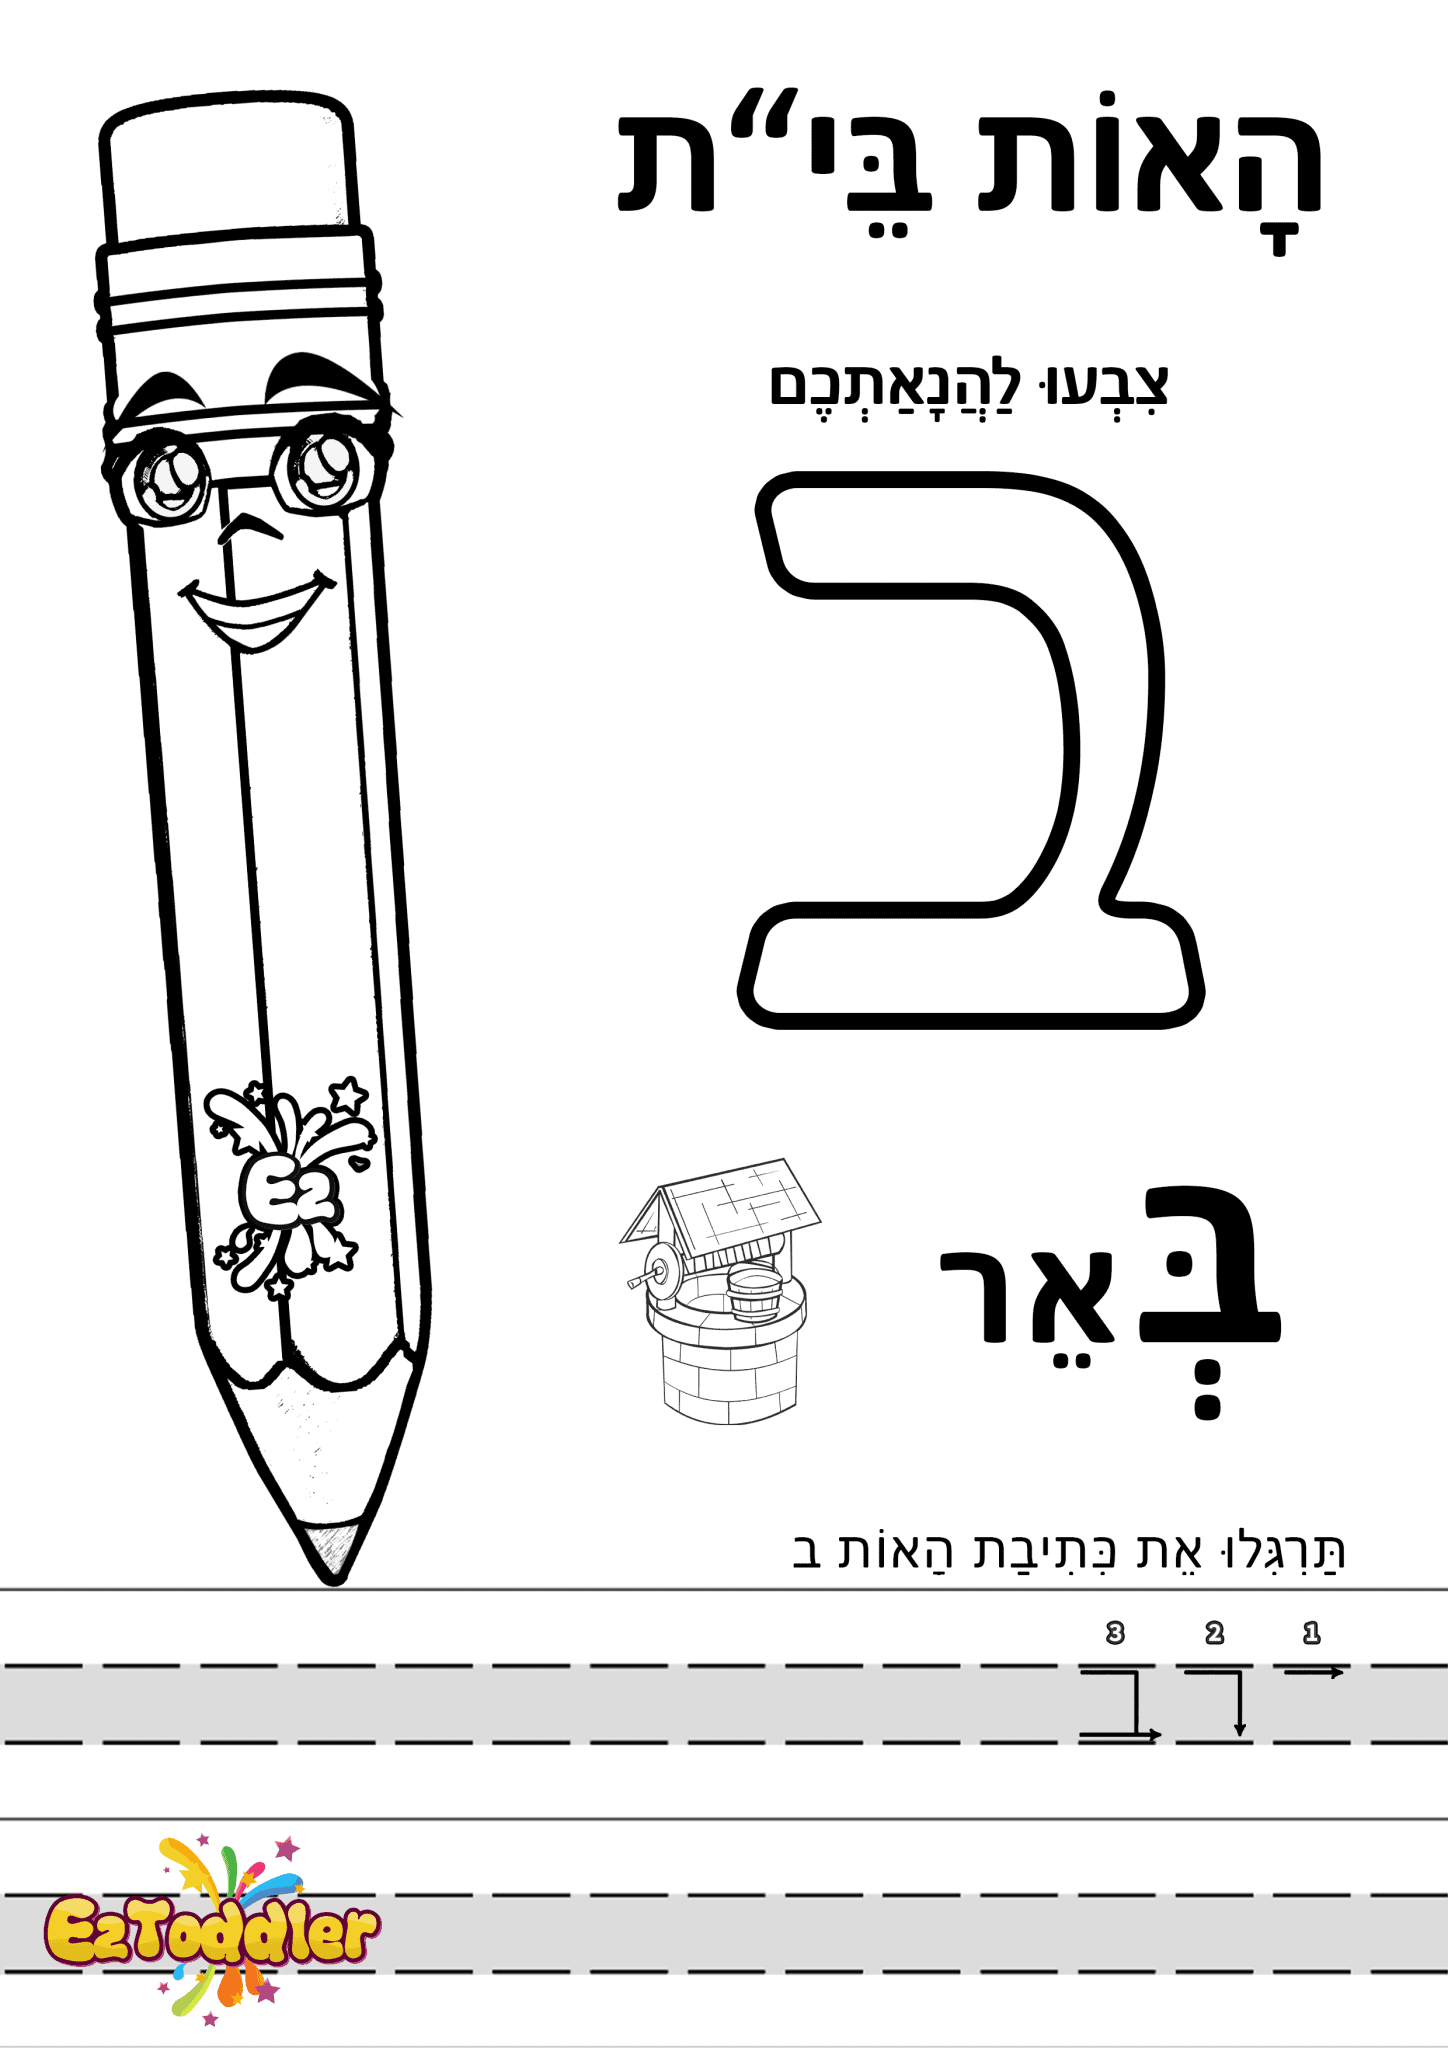 דפי עבודה האות ב בדפוס • דפי עבודה אותיות בעברית | EZToddler